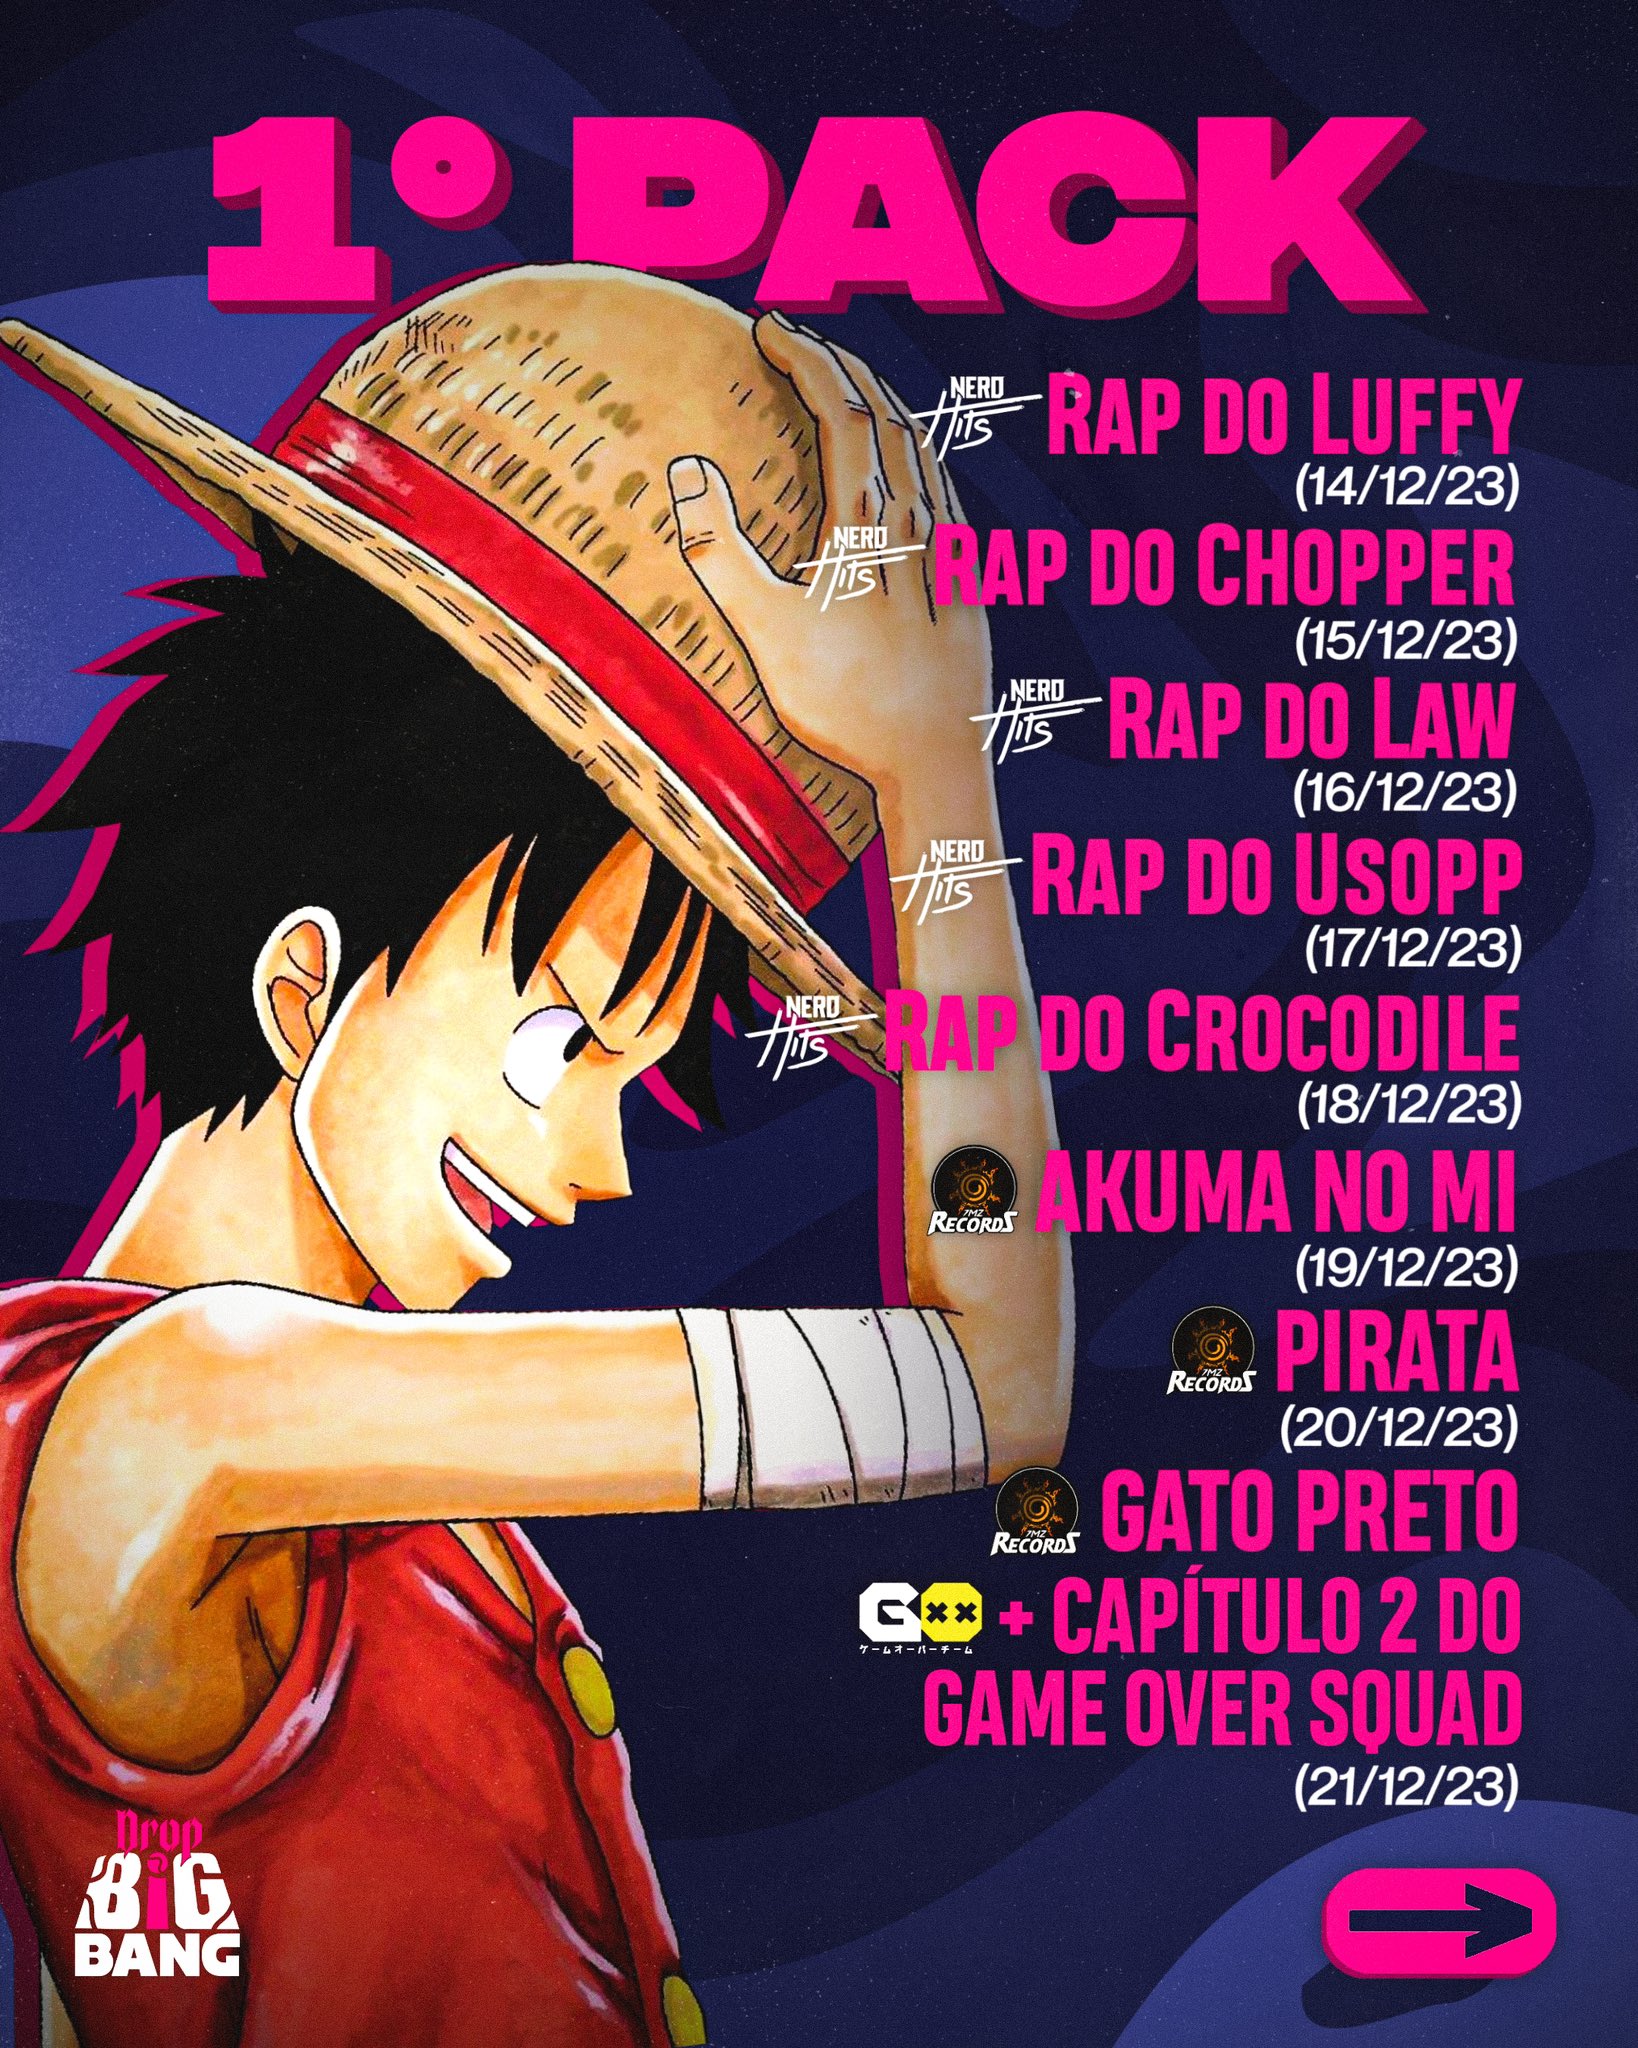 Love Nerd - E aí bora começar a assistir One Piece? ☺️